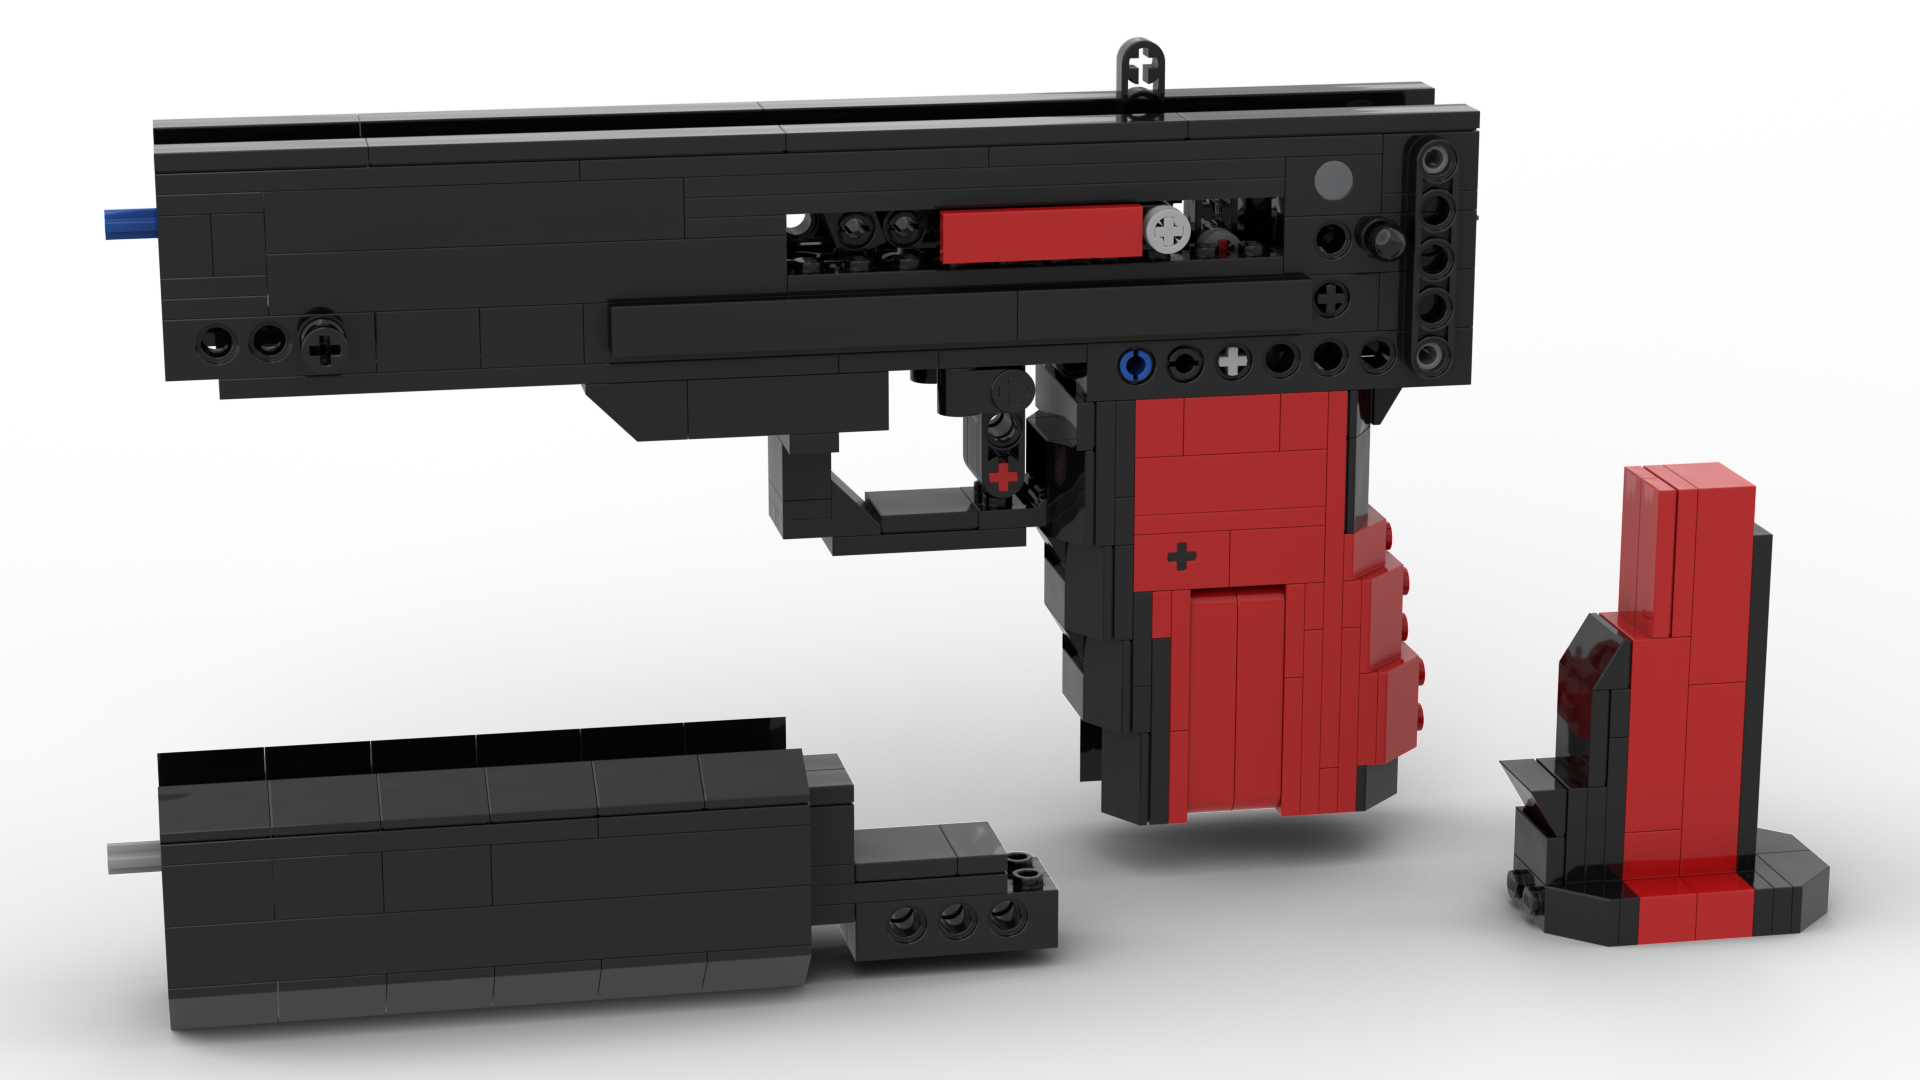 How to Build a LEGO Revolver Gun - Semi-Auto 